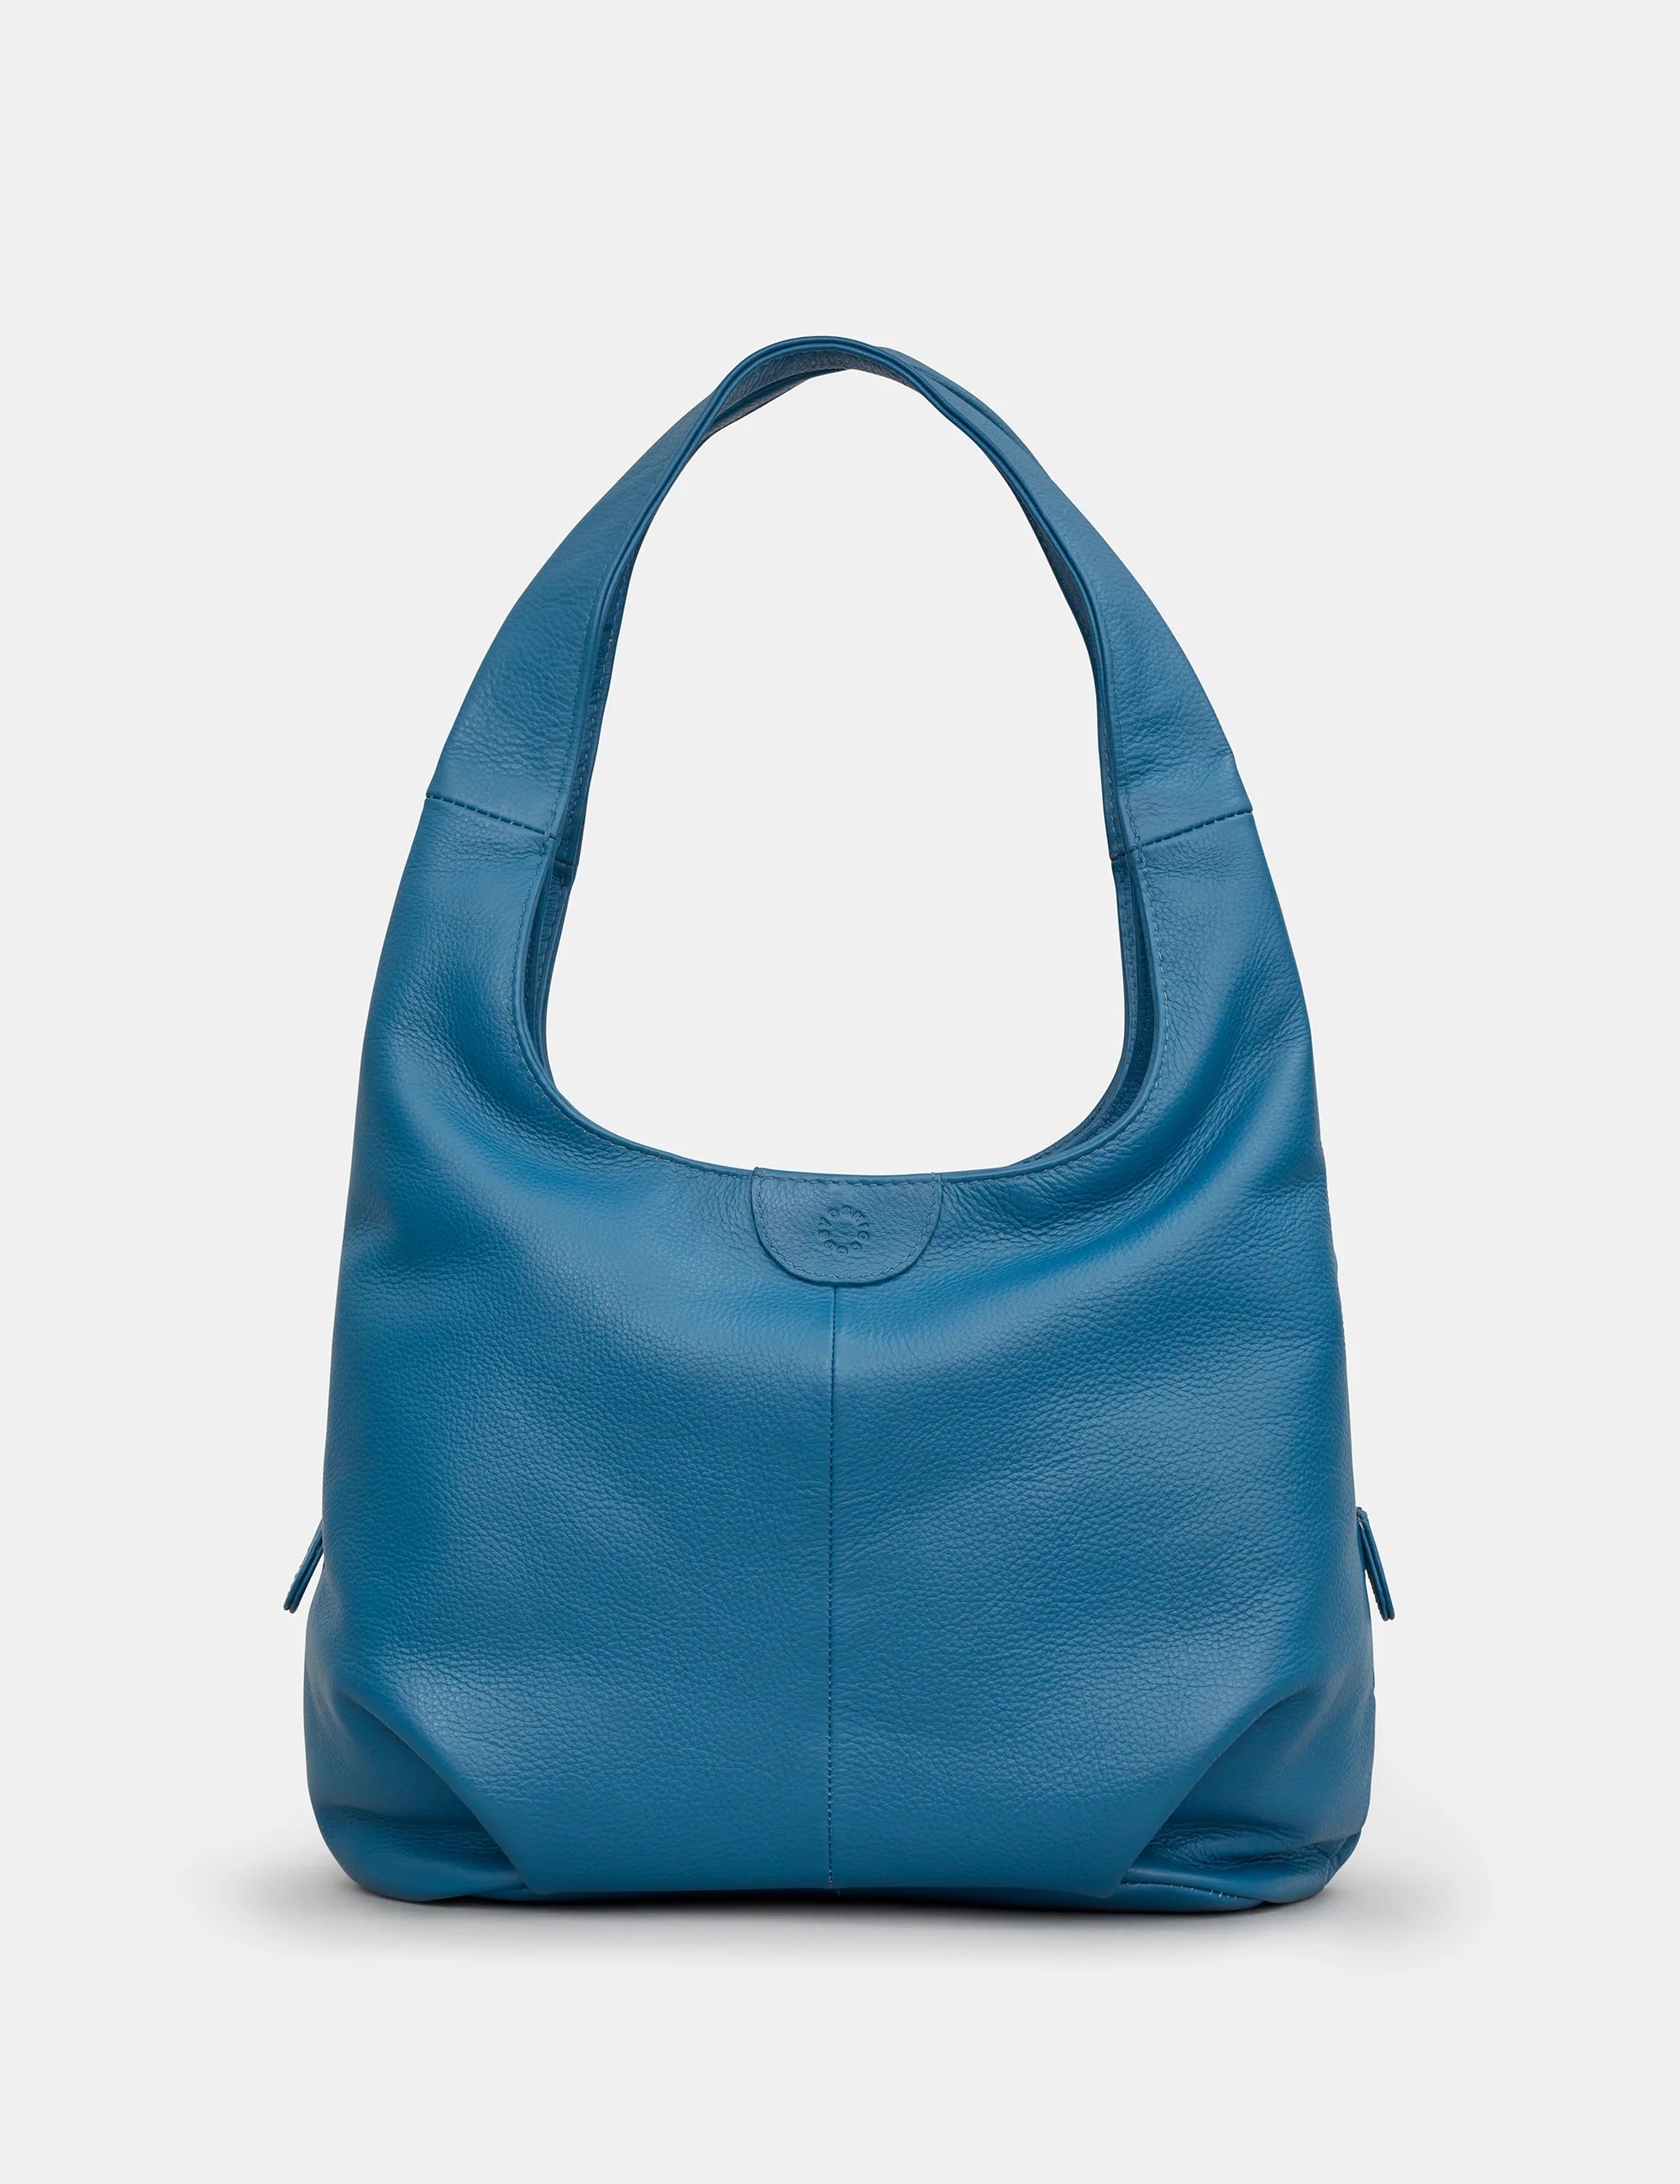 Meehan Leather Shoulder Bag - Petrol Blue